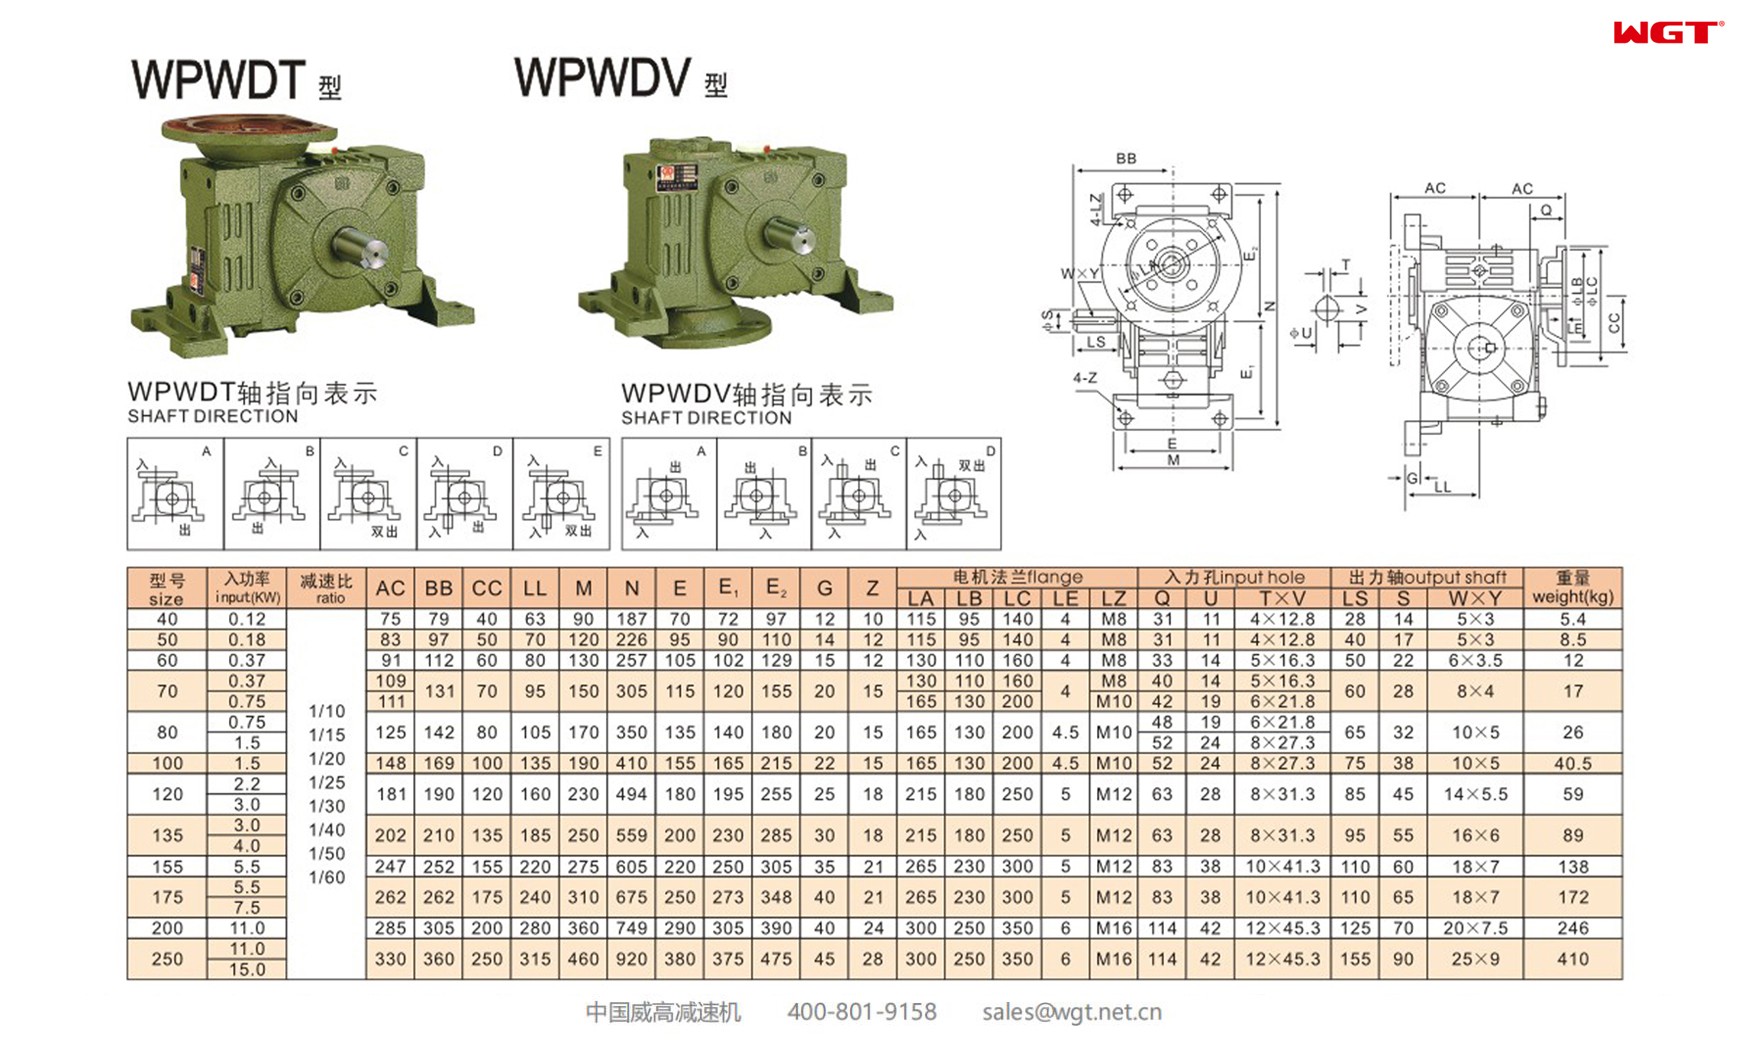 WPWDT200 worm gear reducer universal speed reducer